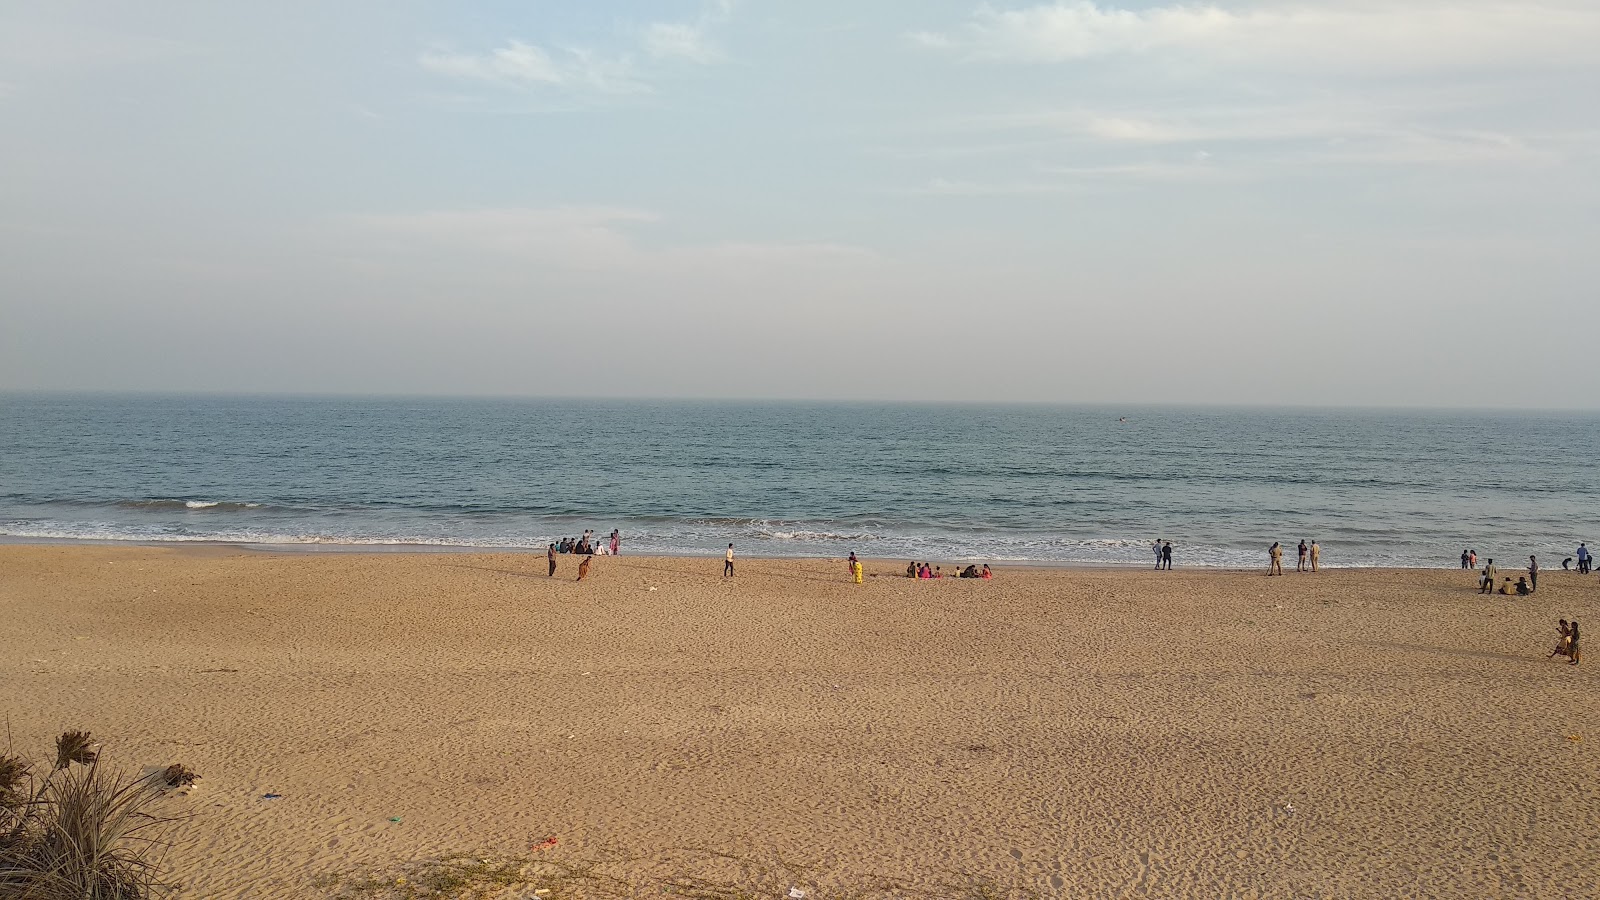 Baruva Beach'in fotoğrafı parlak kum yüzey ile